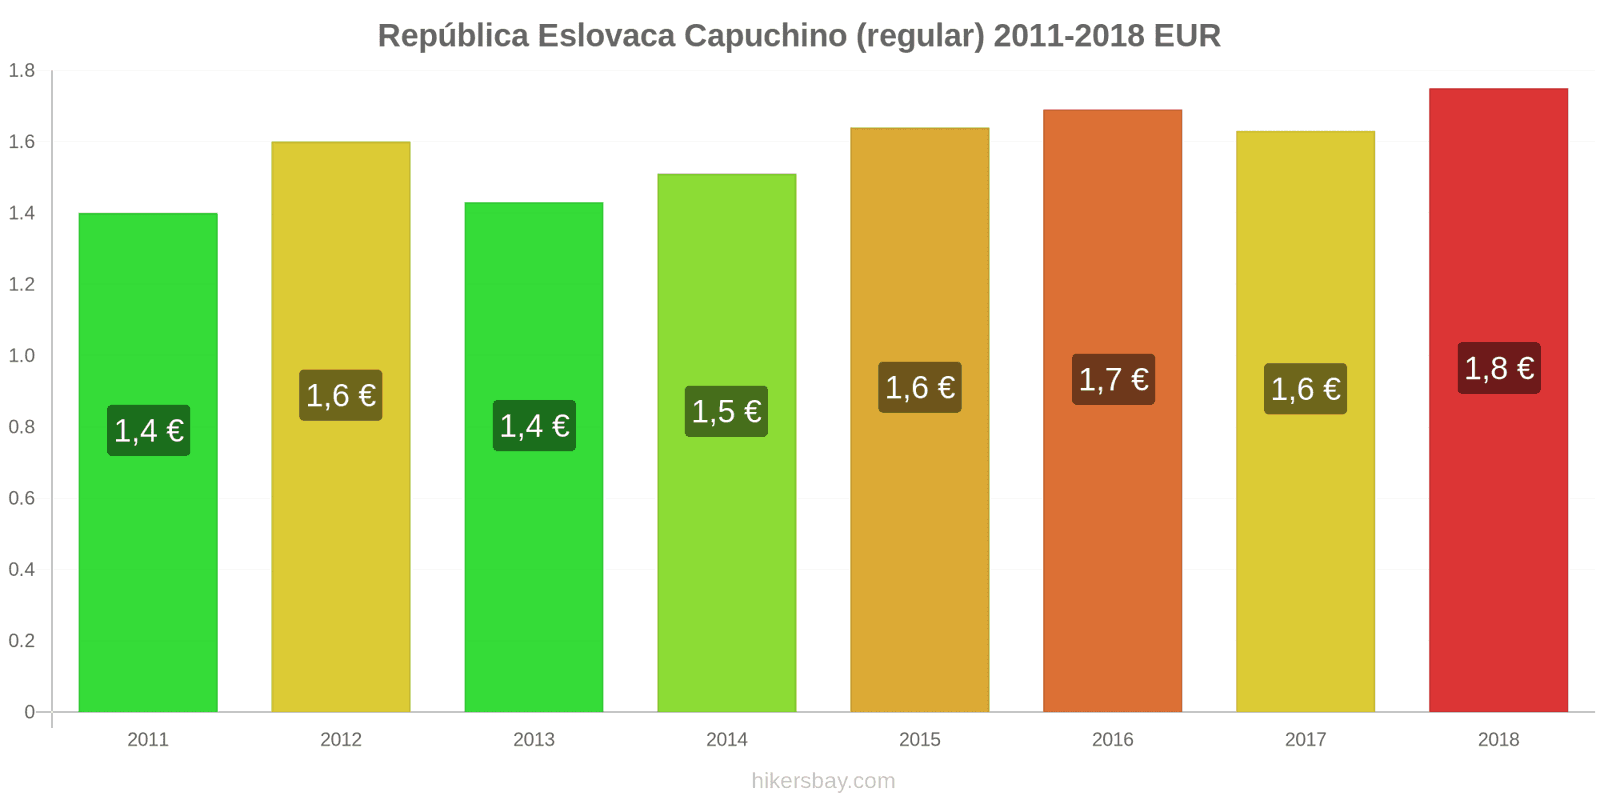 República Eslovaca cambios de precios Cappuccino hikersbay.com